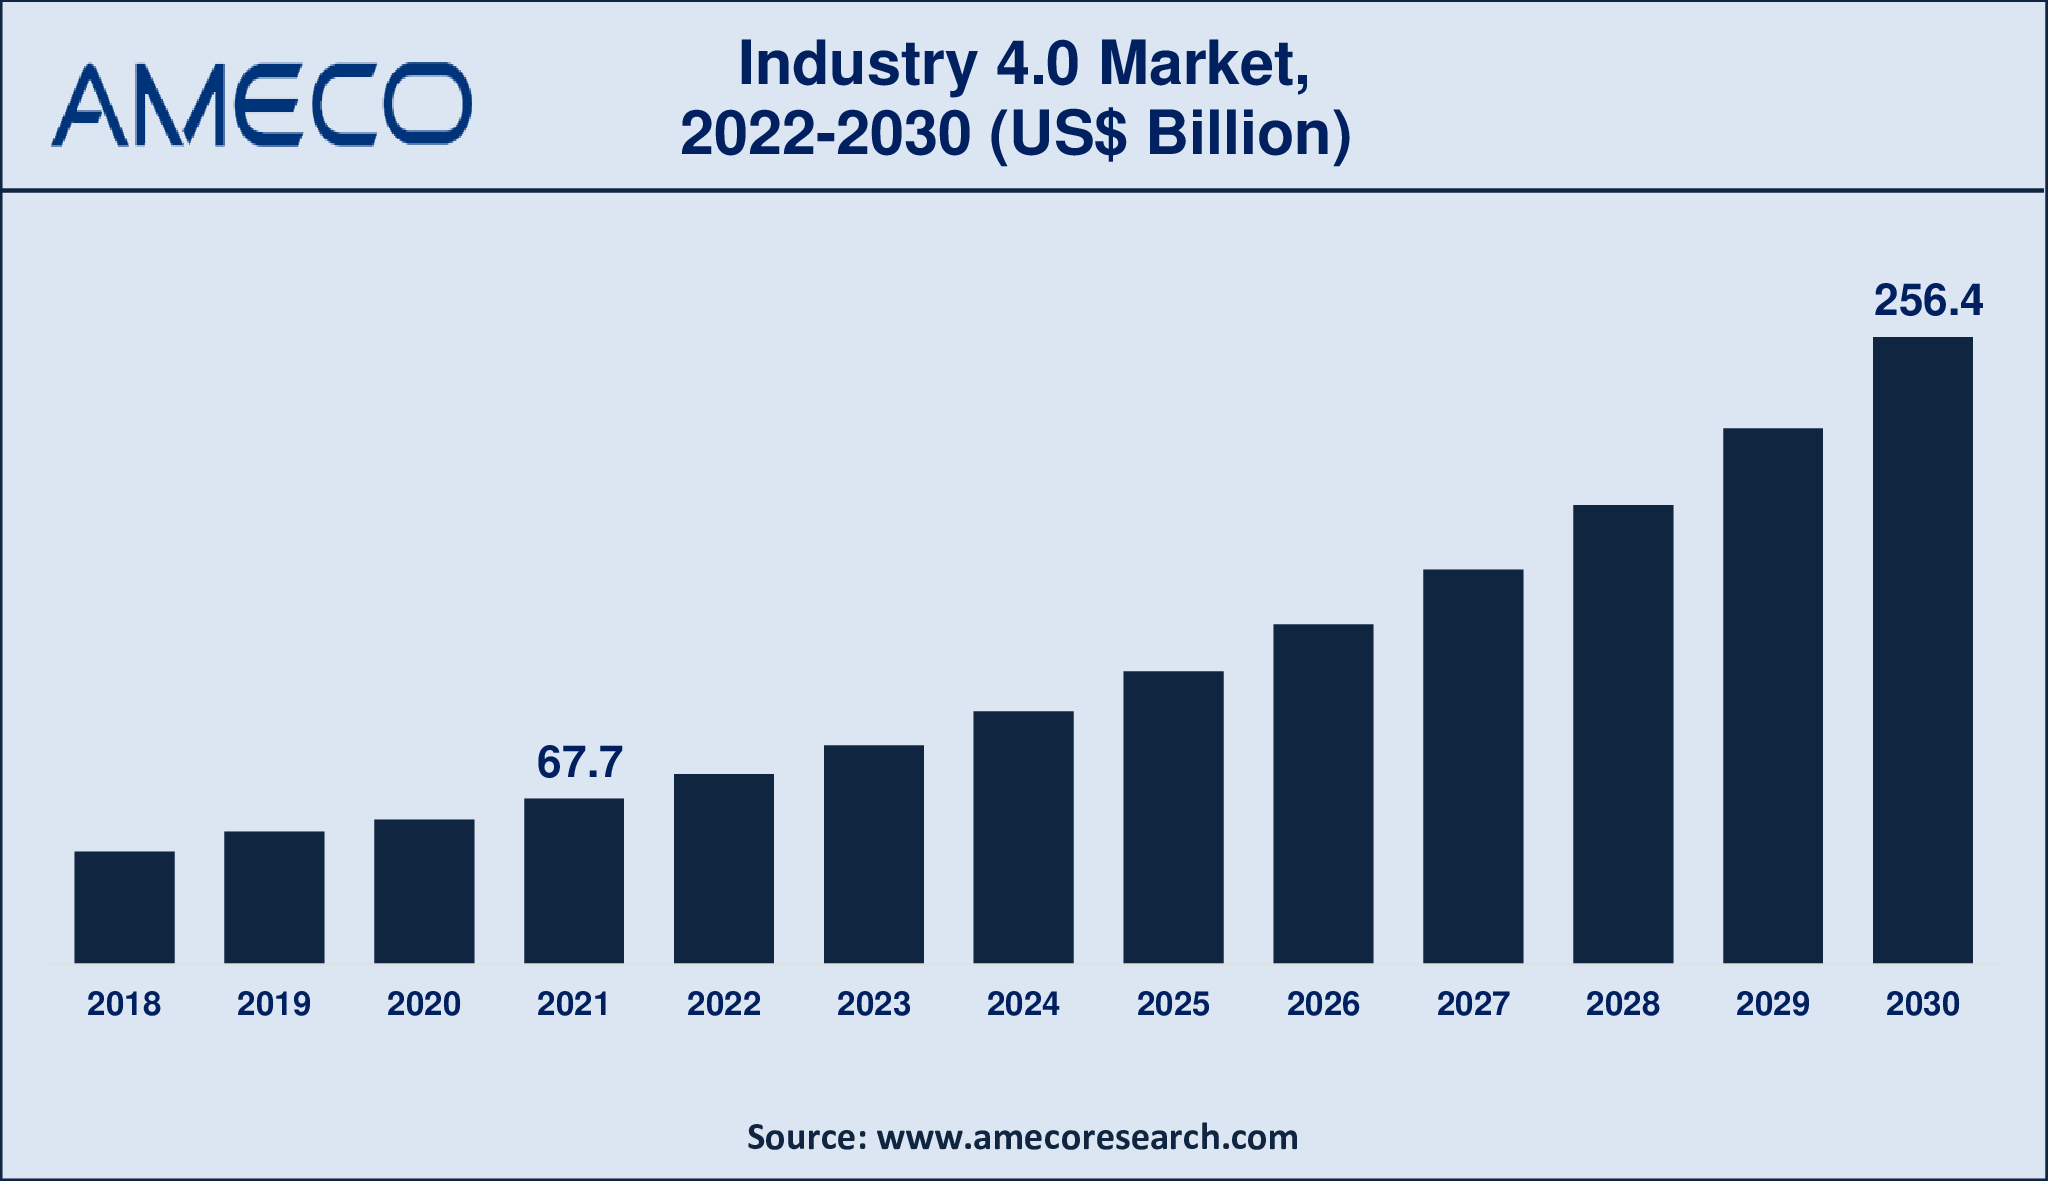 Industry 4.0 Market Report 2030